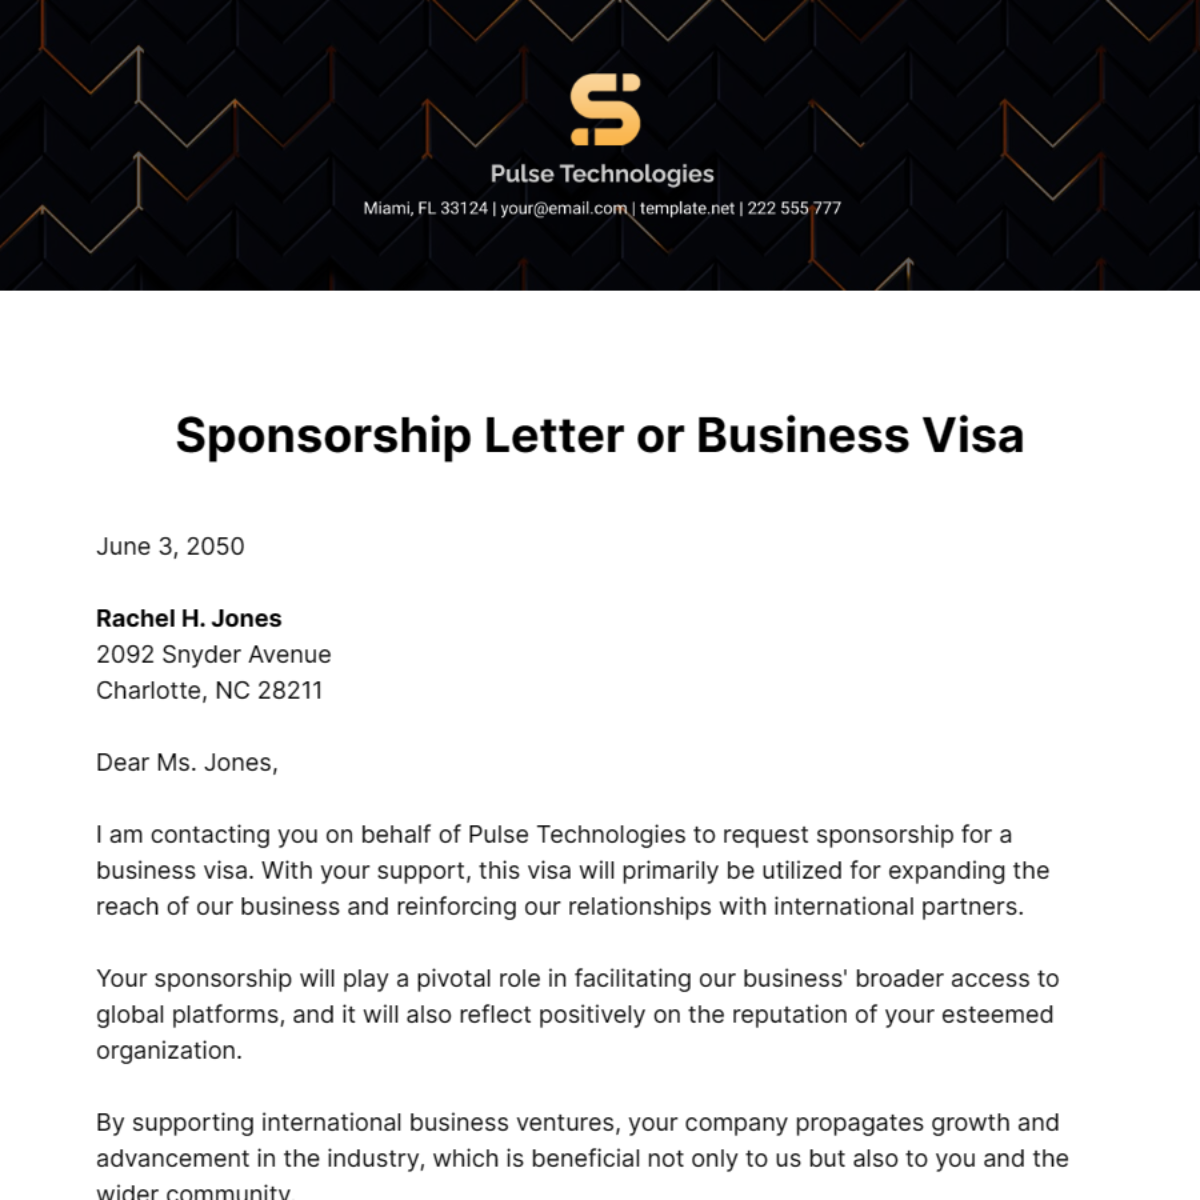 Sponsorship Letter for Business Visa Template